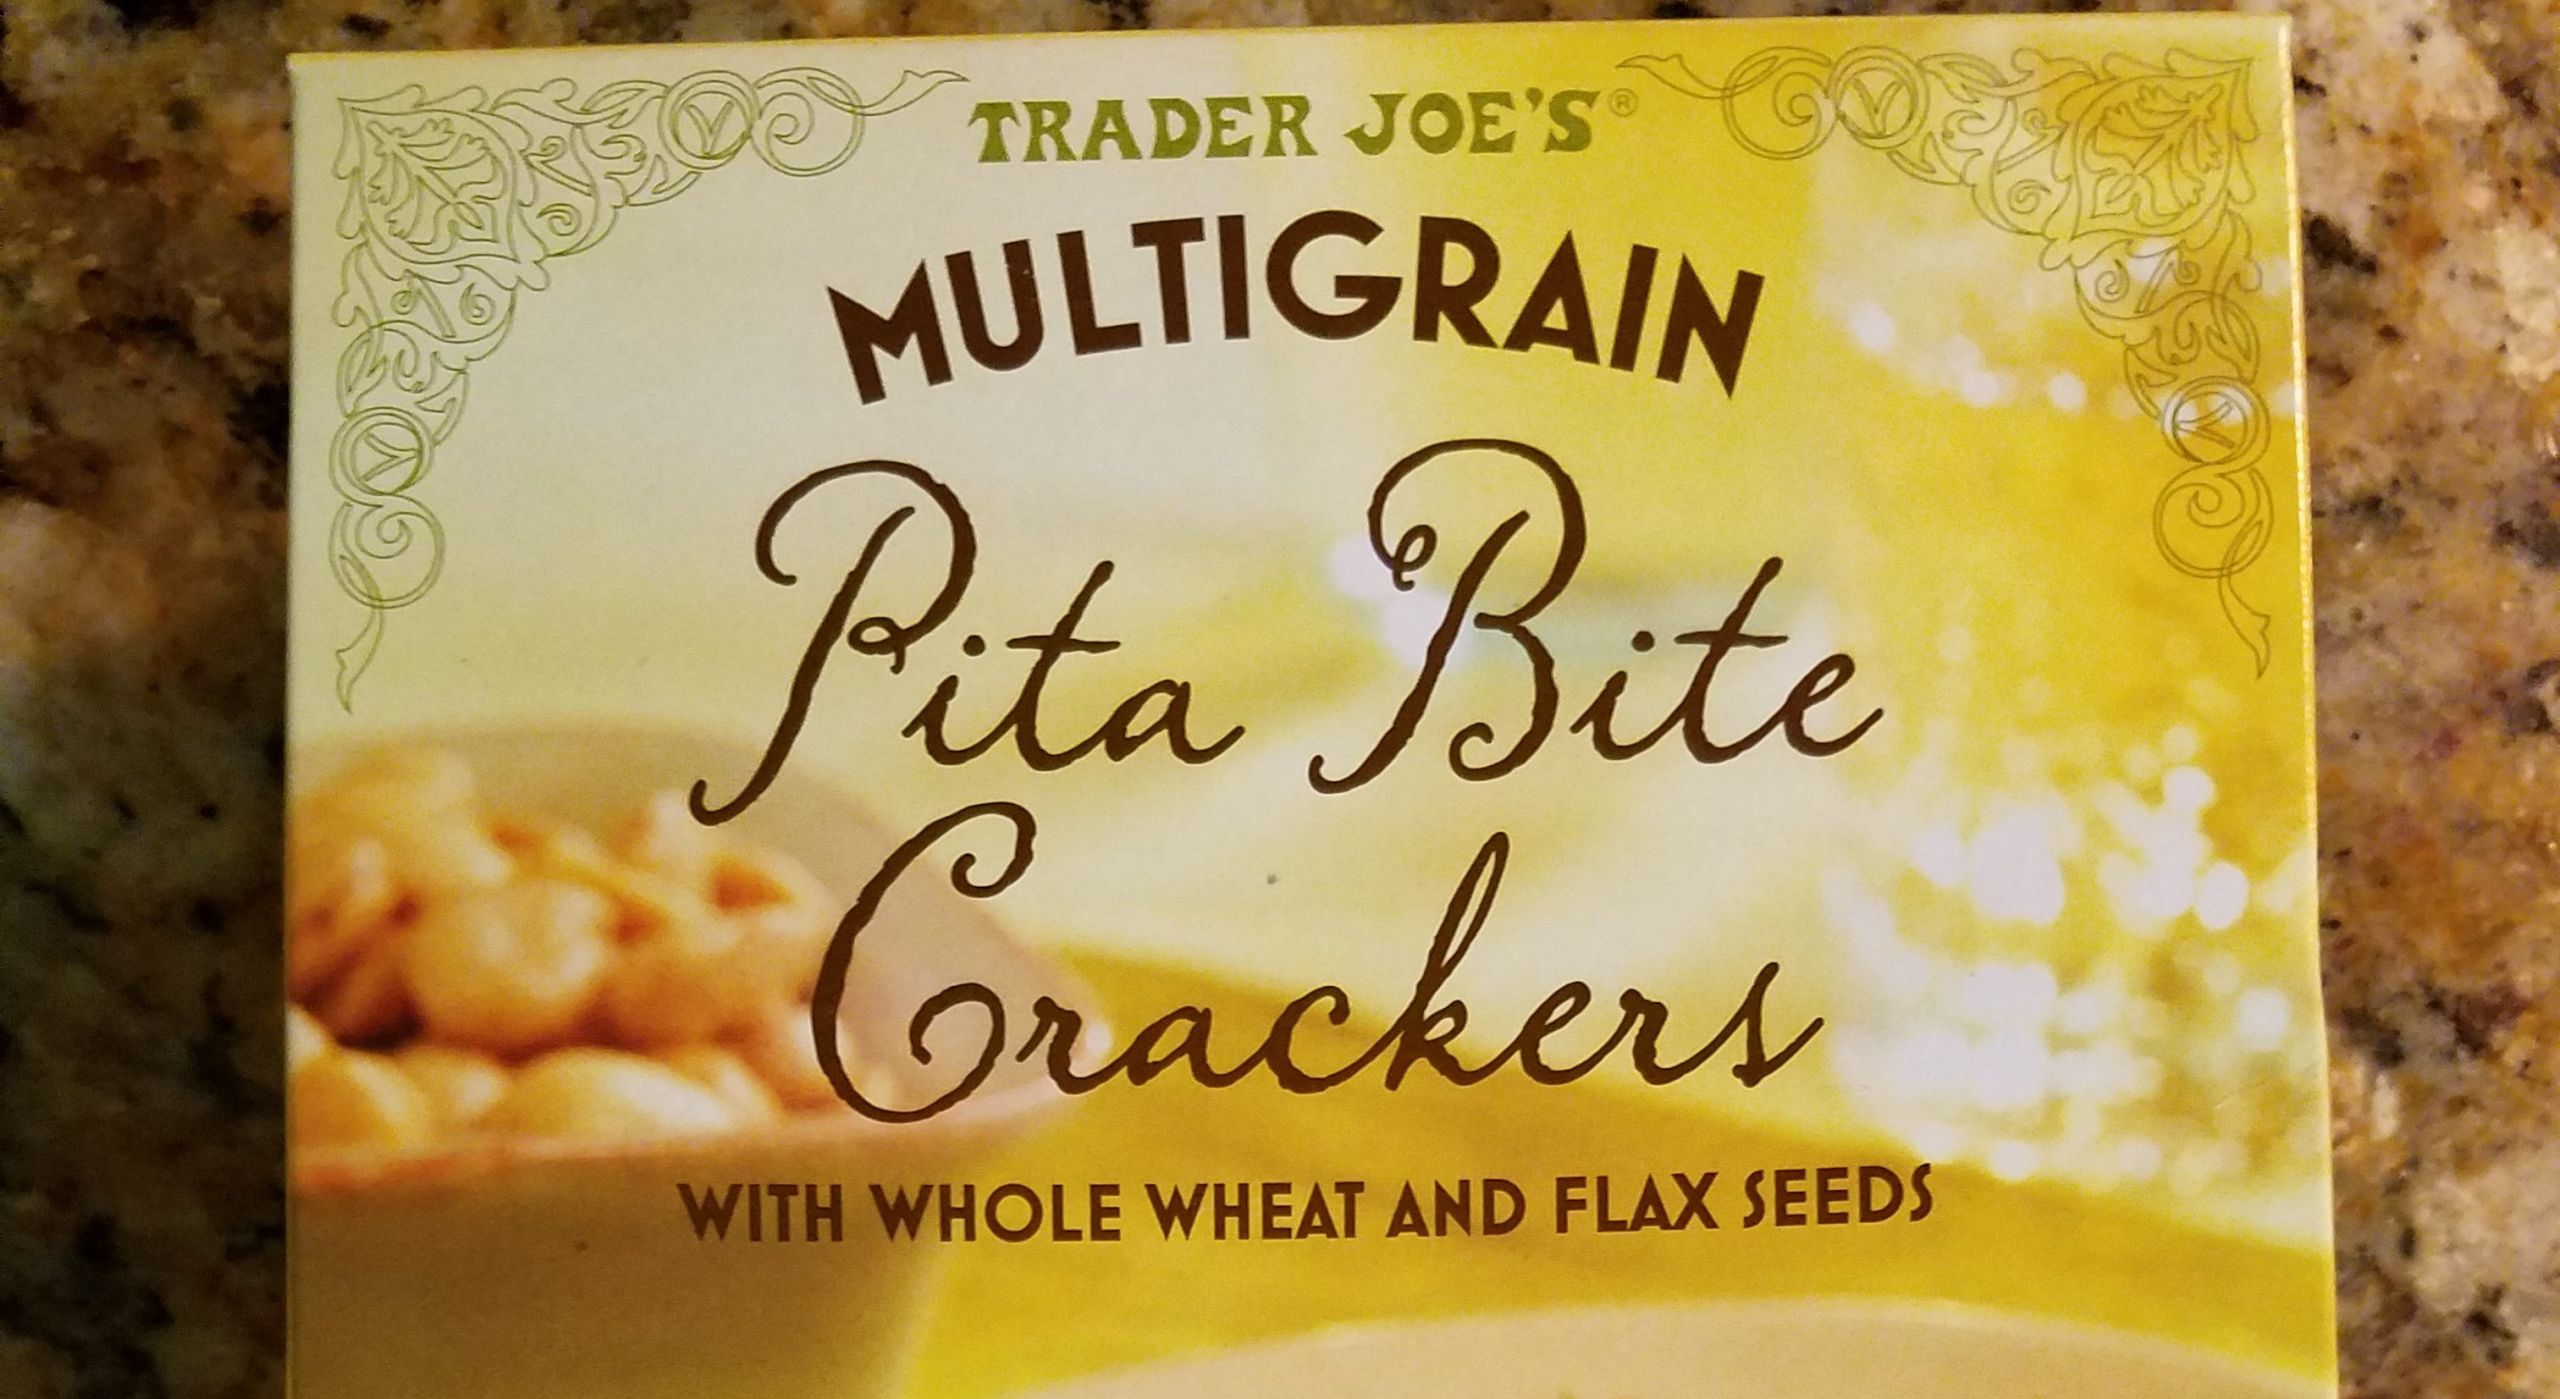 Trader Joe'S Multigrain Crackers
 Crackers Trader Joe s Multi Grain Pita Bite Crackers with